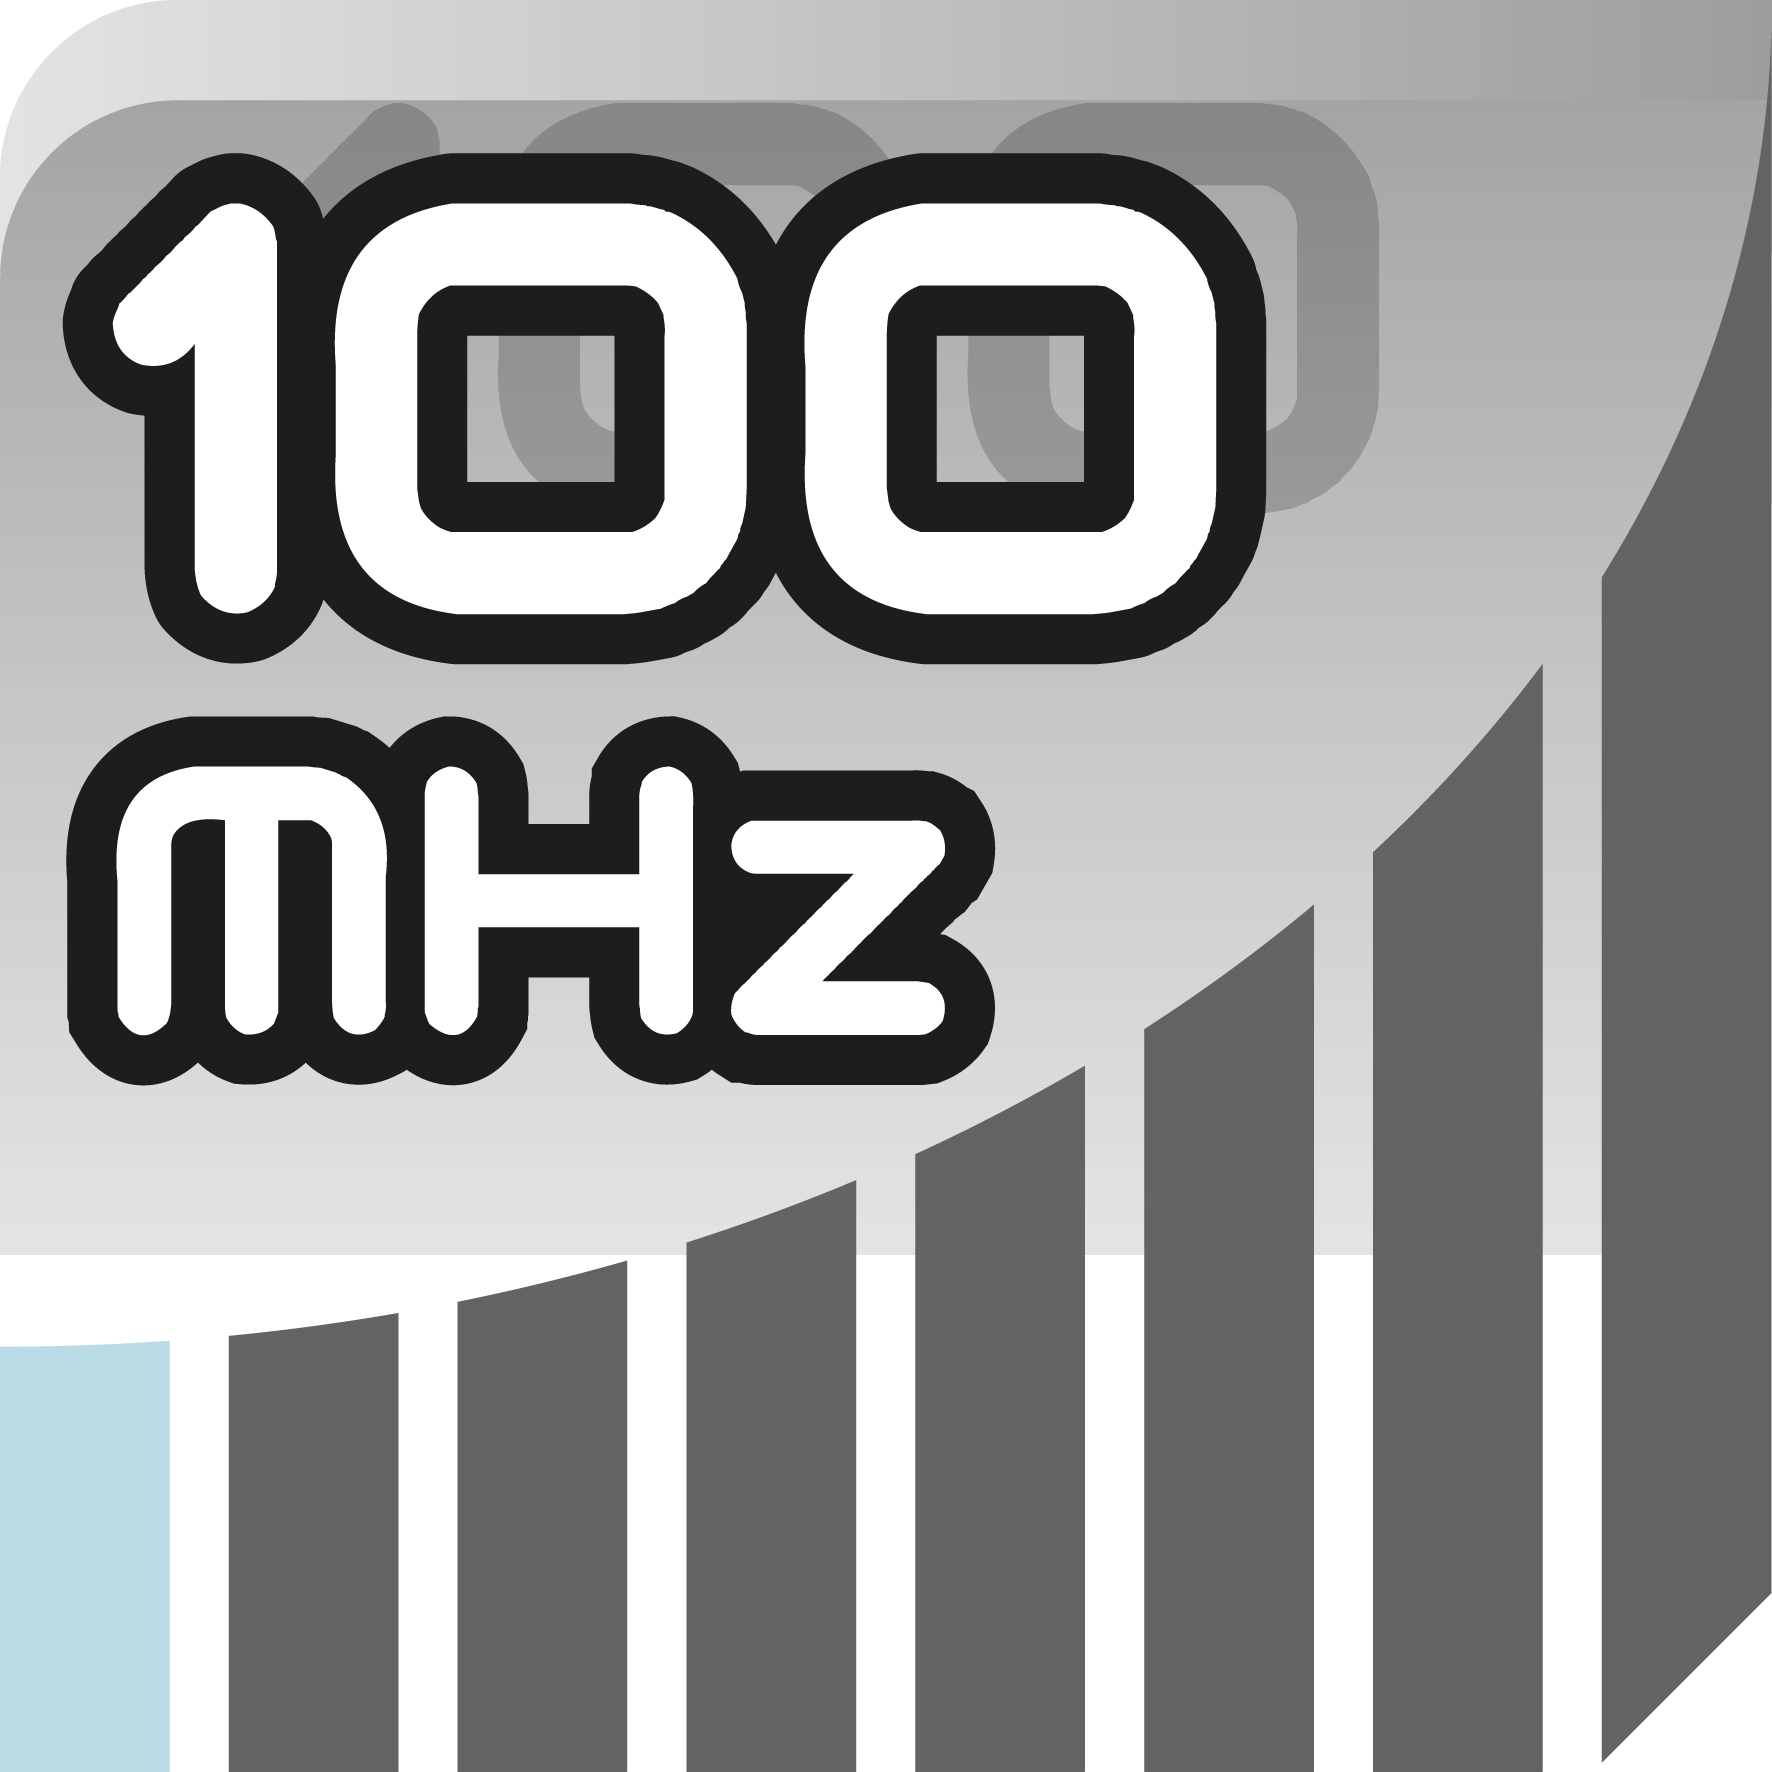 100 MHz